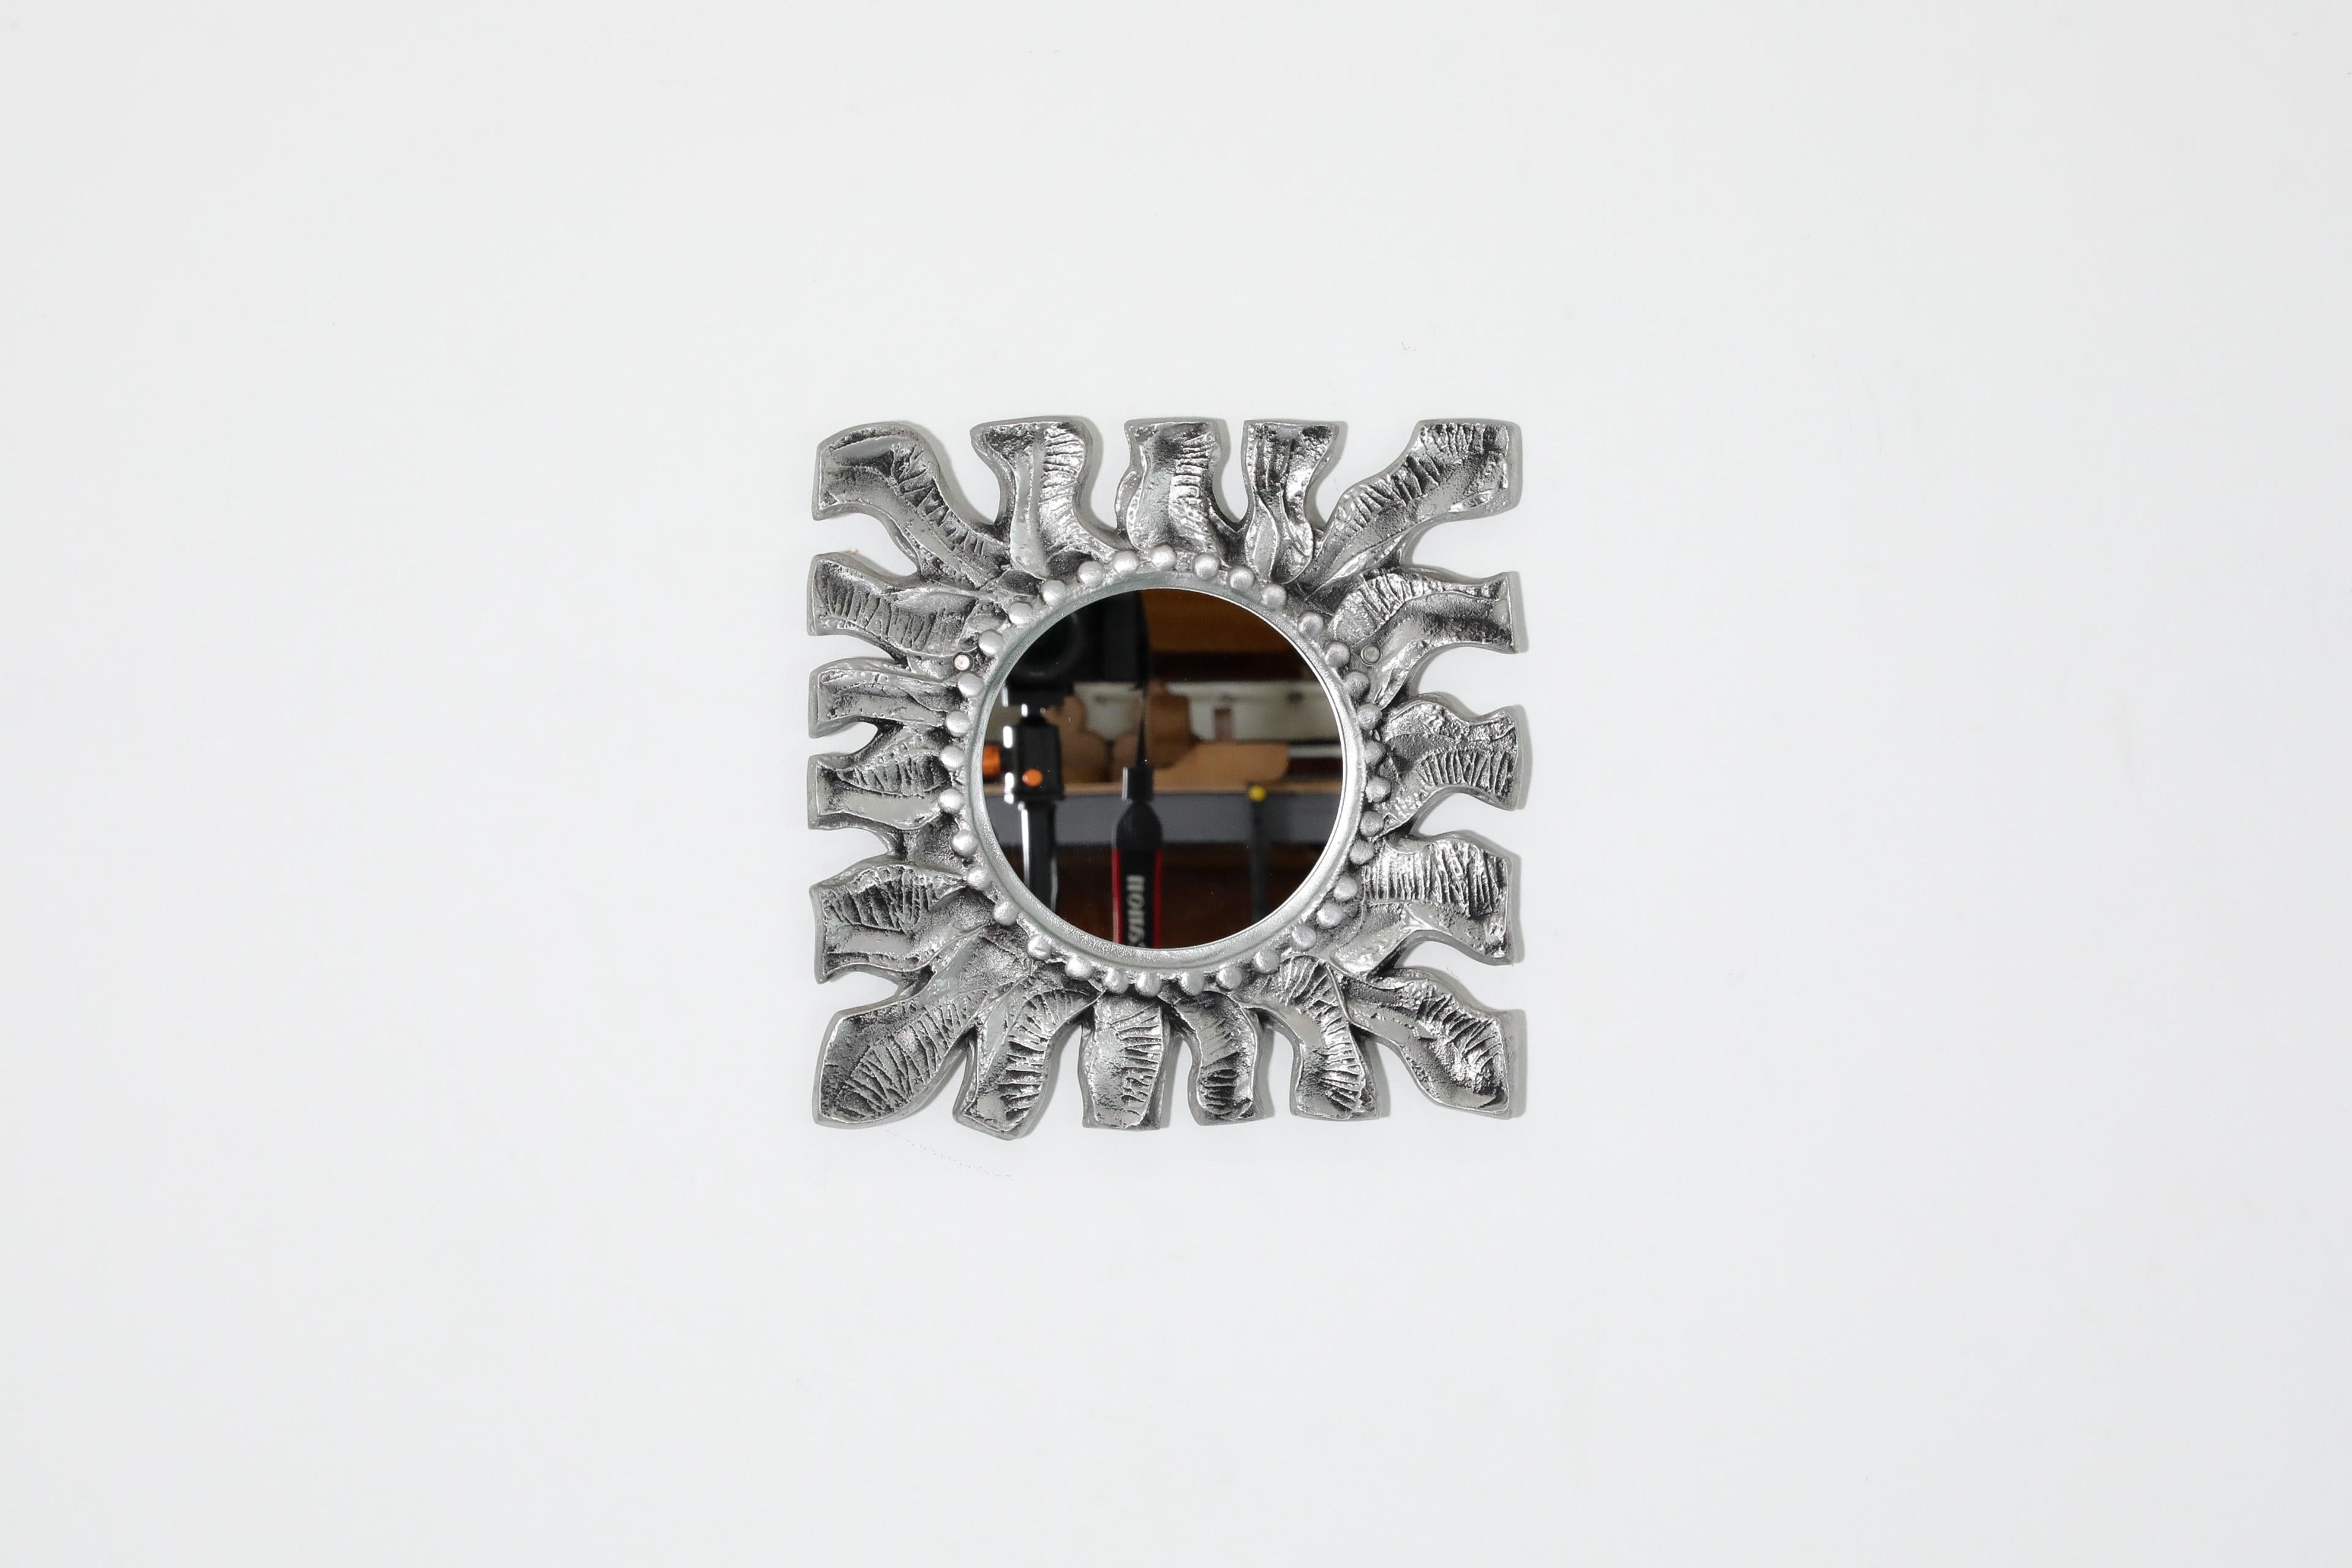 Schöner Sonnenspiegel aus Aluminiumguss von Donald Drumm, 1970er Jahre. Der geprägte, strukturierte Aluminiumrahmen mit organischen Kurven und rundem Spiegel ist eine dekorative Ergänzung mit stilvoller Funktionalität. In ursprünglichem Zustand mit